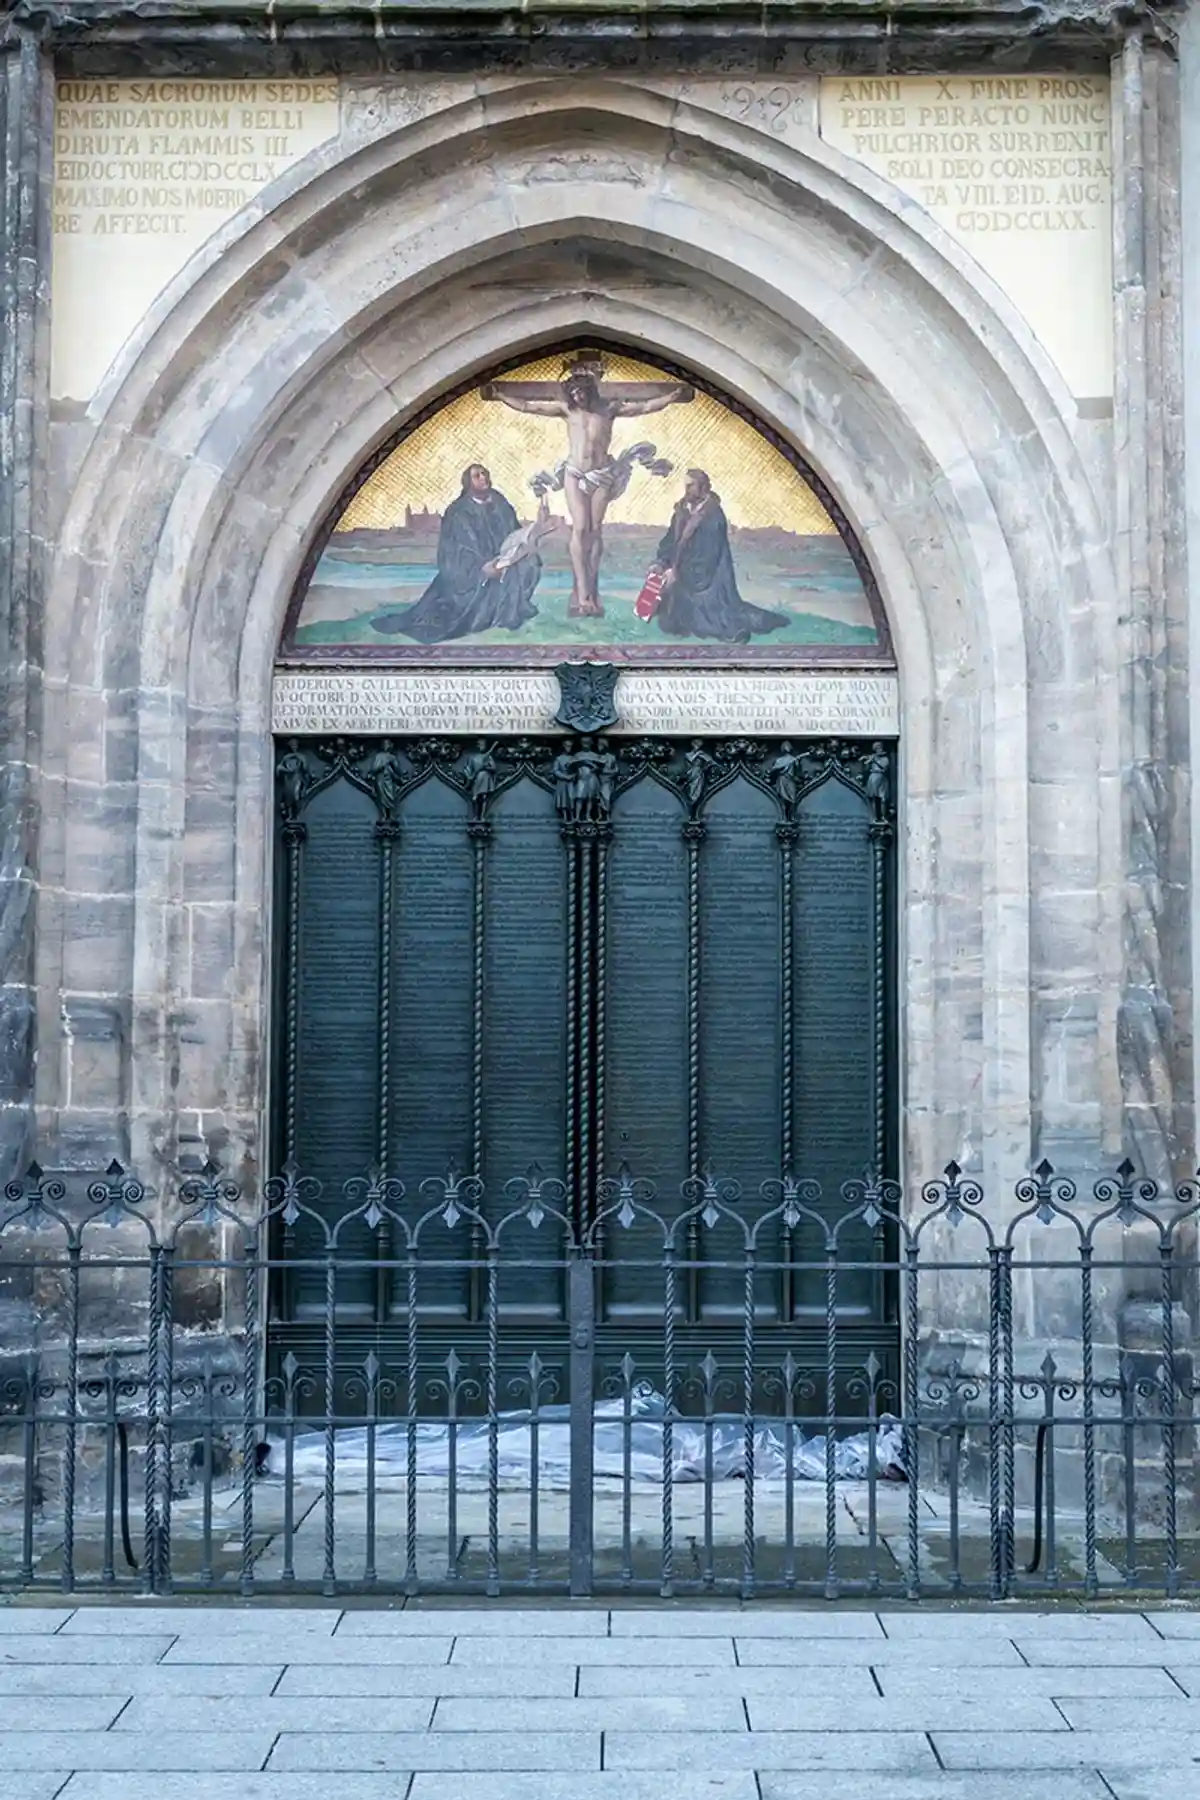 Знаменитая дверь в церкви Всех святых, где Мартин Лютер разместил девяносто пять тезисов. Фото: shutterstock.com